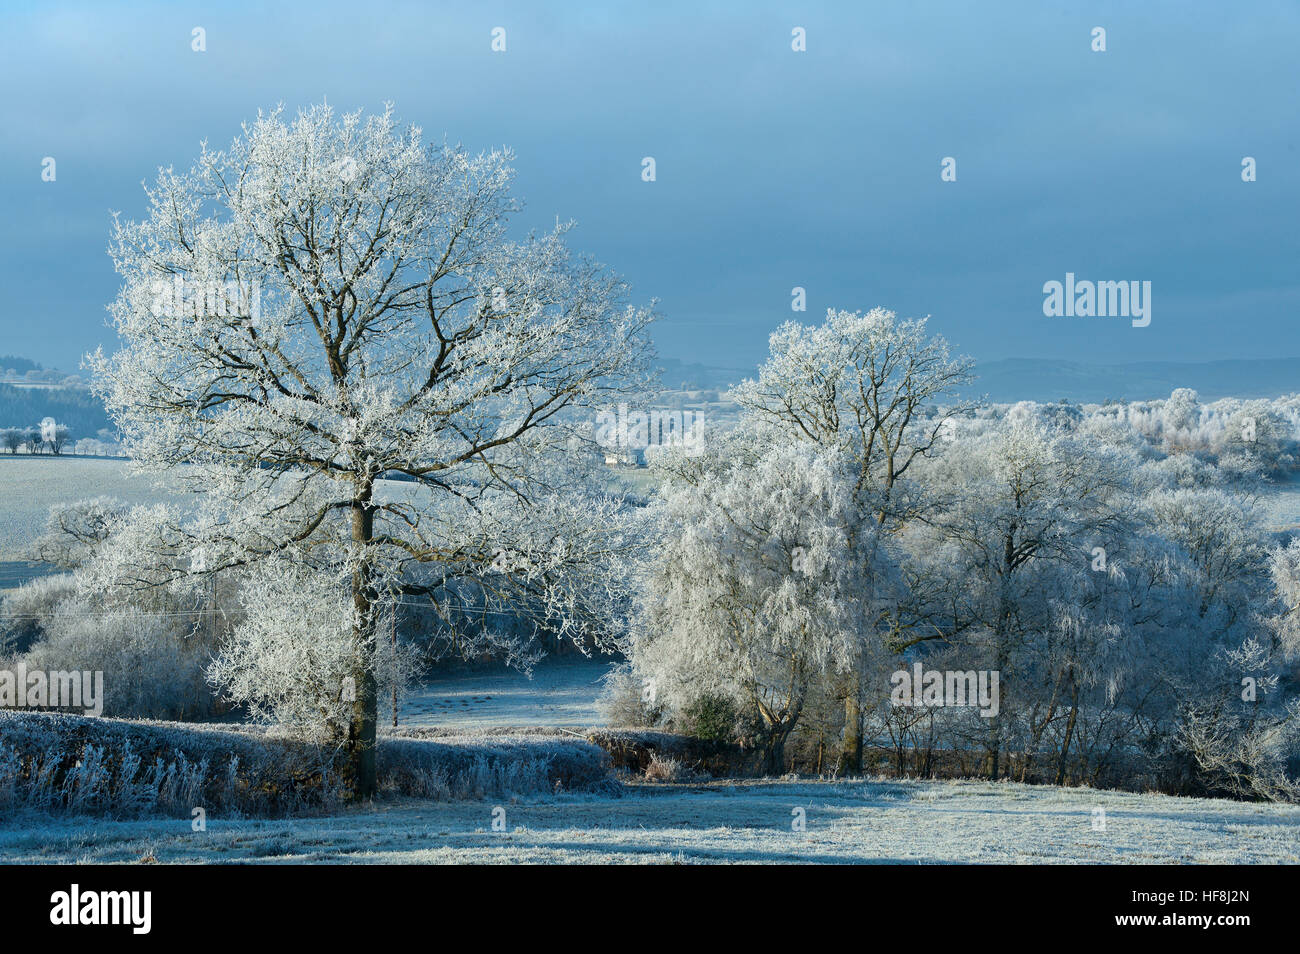 Powys, Pays de Galles, Royaume-Uni. 29 décembre 2016. Très froid et frosty au milieu du Pays de Galles à l'aube avec des températures chutant d'environ moins 5 degrés Celsius la nuit dernière. © Graham M. Lawrence/Alamy Live News. Banque D'Images